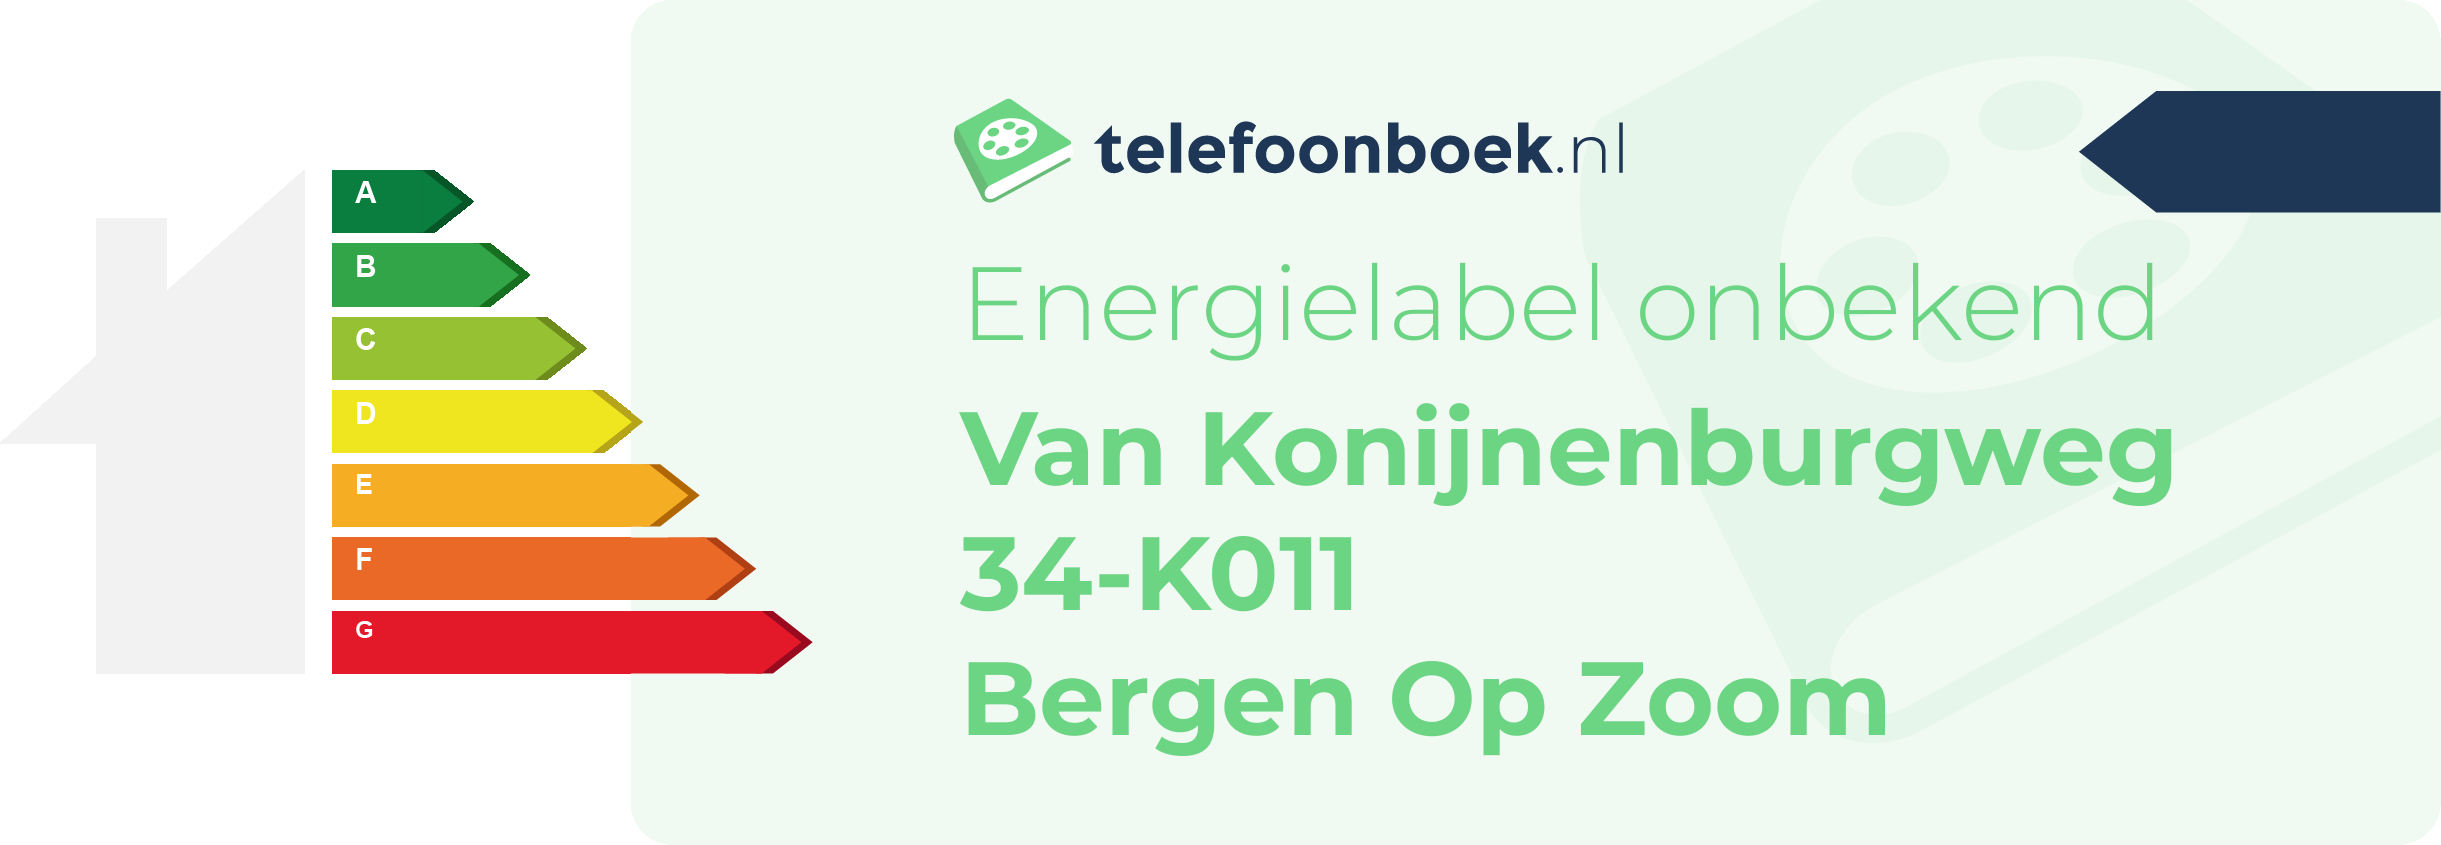 Energielabel Van Konijnenburgweg 34-K011 Bergen Op Zoom